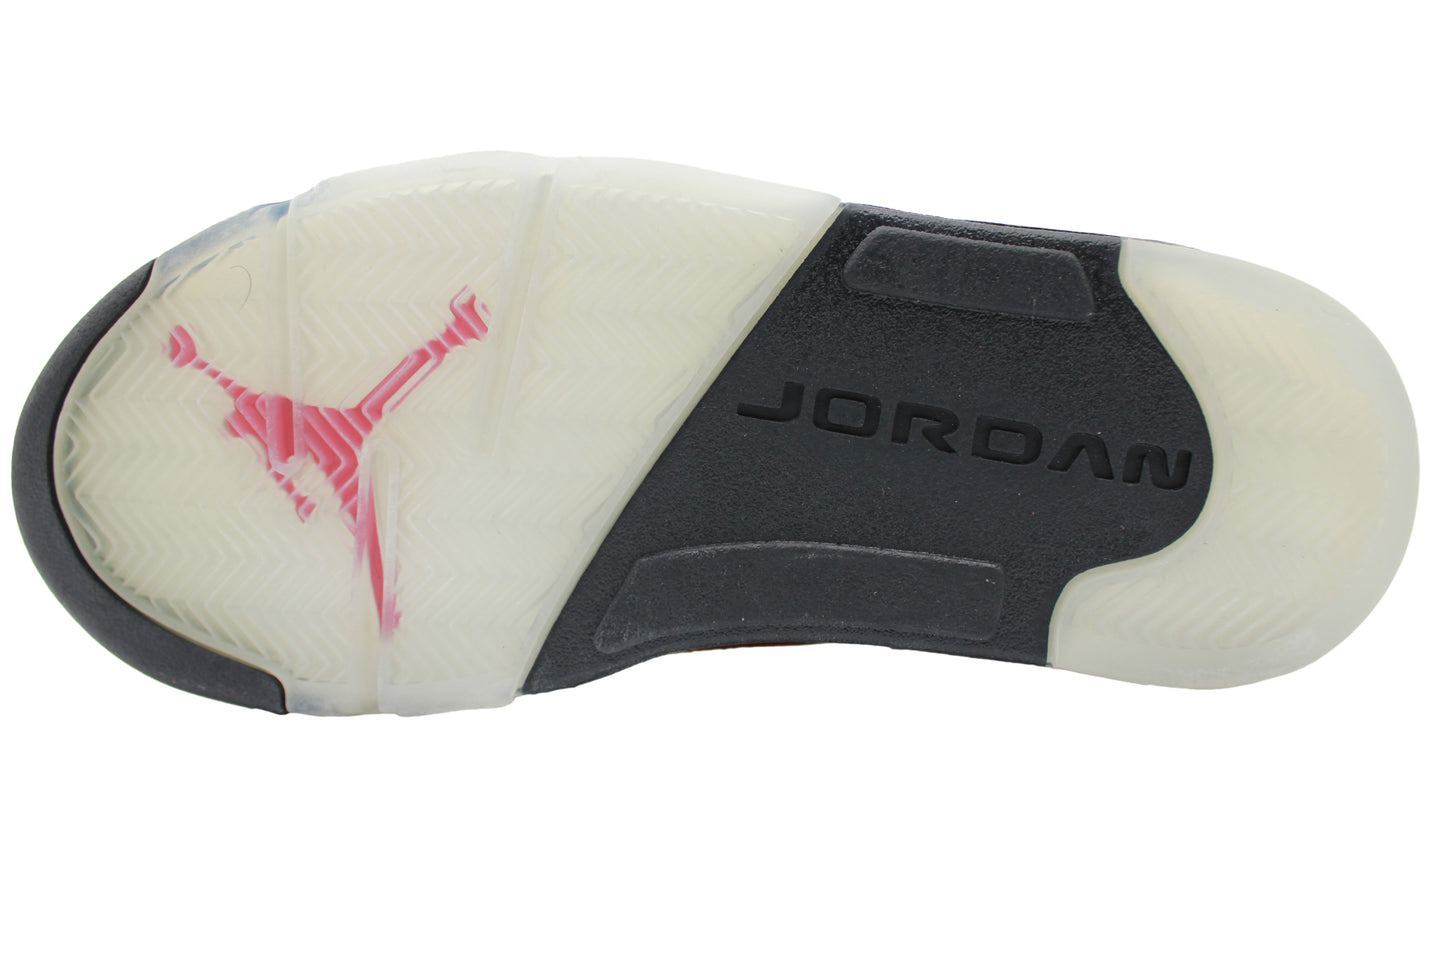 Air Jordan 5 Retro “Raging Bull Pack”